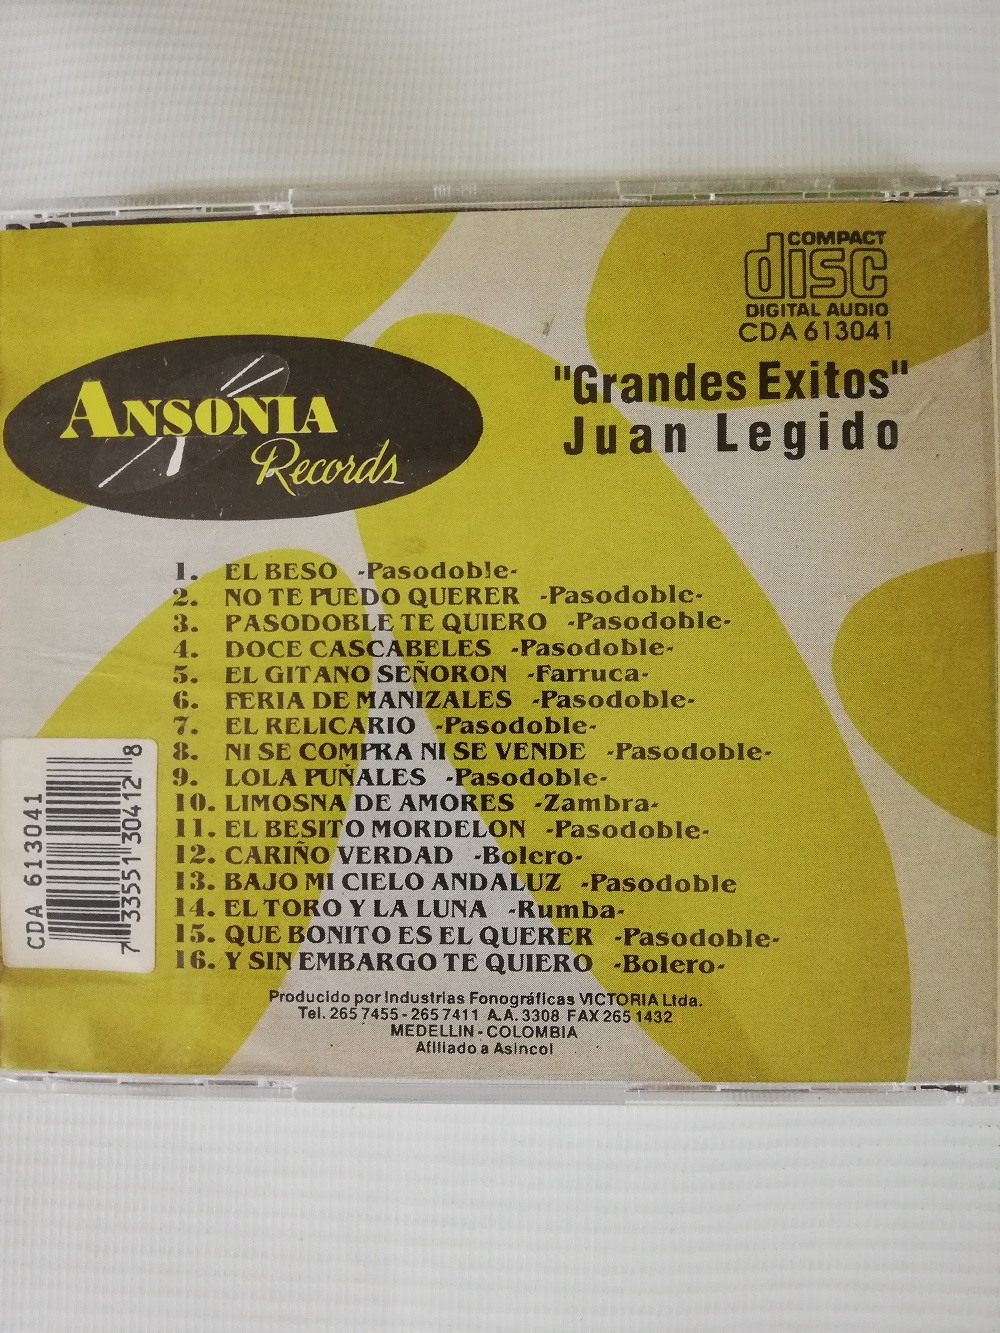 Imagen CD JUAN LEGIDO - GRANDES EXITOS 2